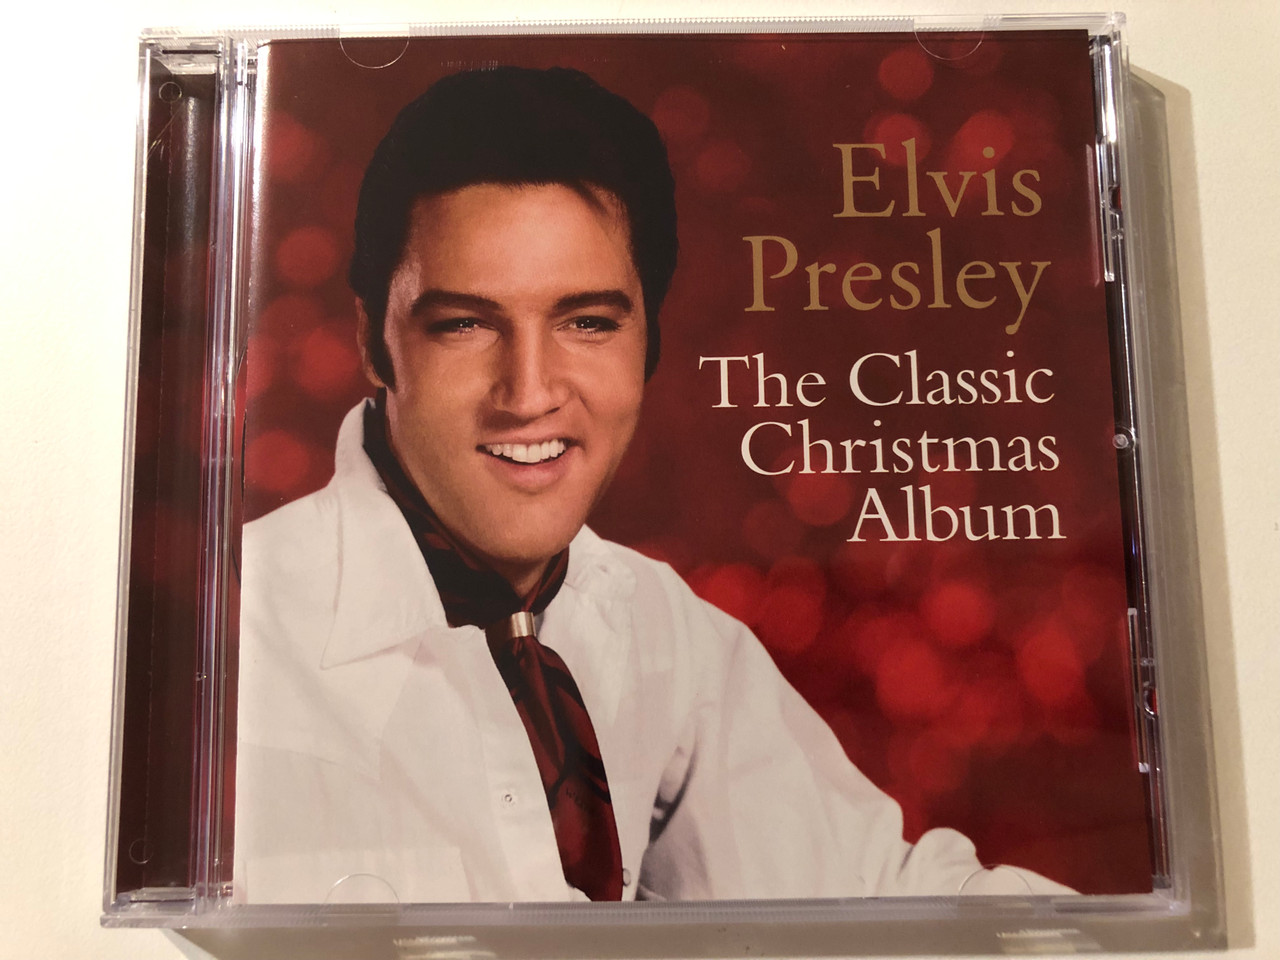 https://cdn10.bigcommerce.com/s-62bdpkt7pb/products/0/images/276134/Elvis_Presley_The_Classic_Christmas_Album_RCA_Audio_CD_2012_88725455382_1__90371.1686158807.1280.1280.JPG?c=2&_gl=1*p3k8e4*_ga*MjA2NTIxMjE2MC4xNTkwNTEyNTMy*_ga_WS2VZYPC6G*MTY4NjE0NjEyNC45MzEuMS4xNjg2MTU4NzIzLjEzLjAuMA..